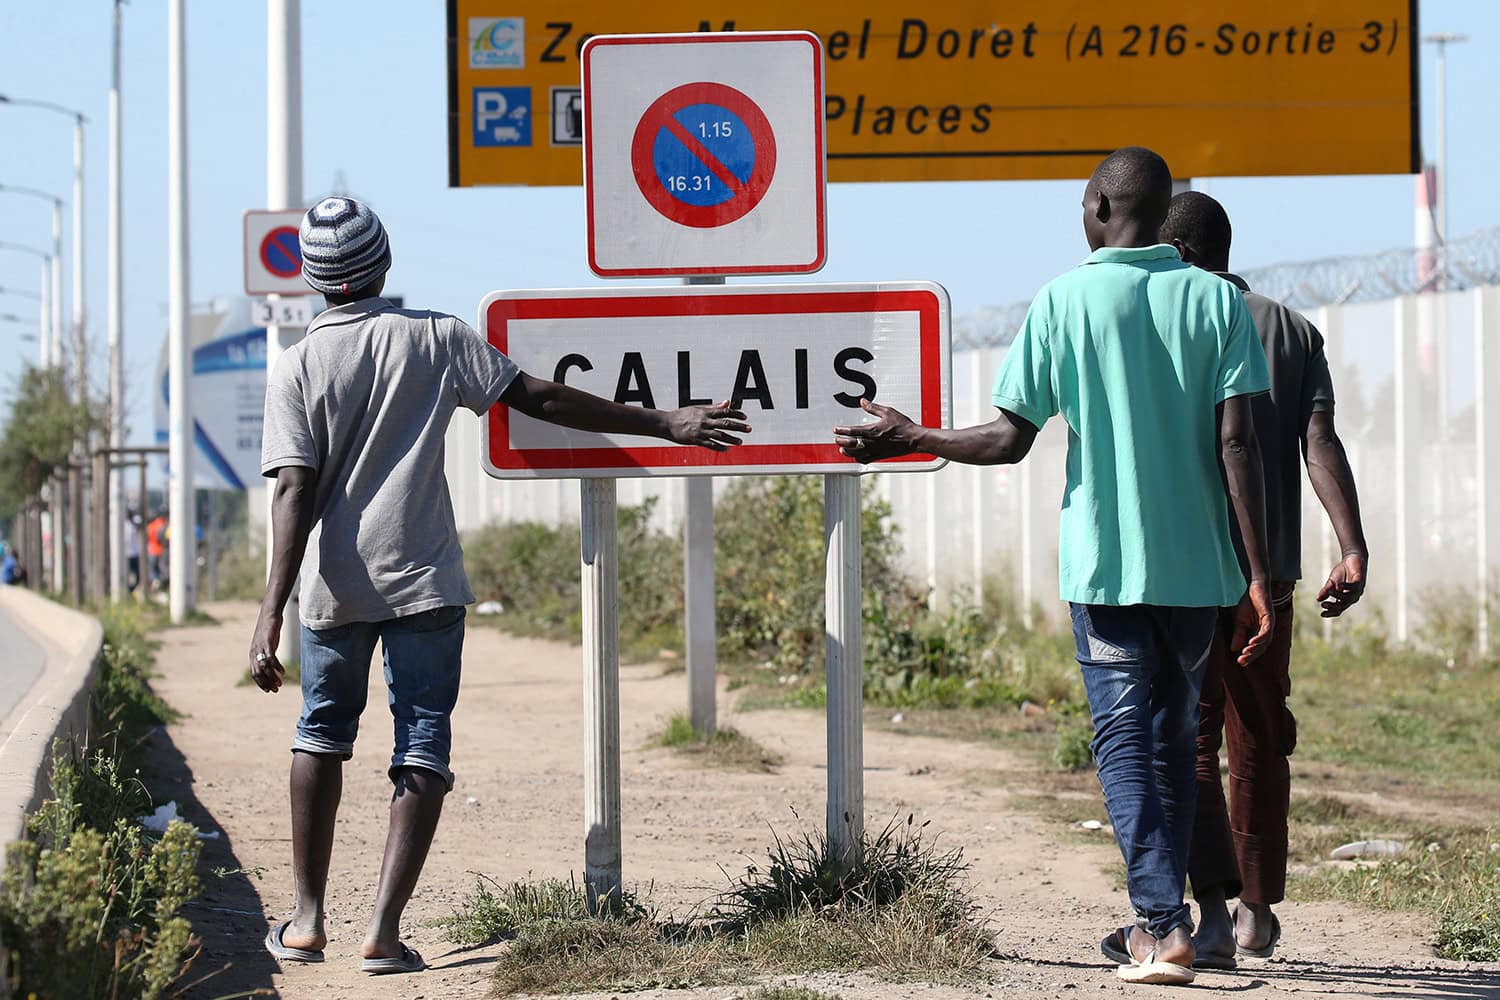 Voluntarios de La Jungla de Calais, acusados de explotación sexual